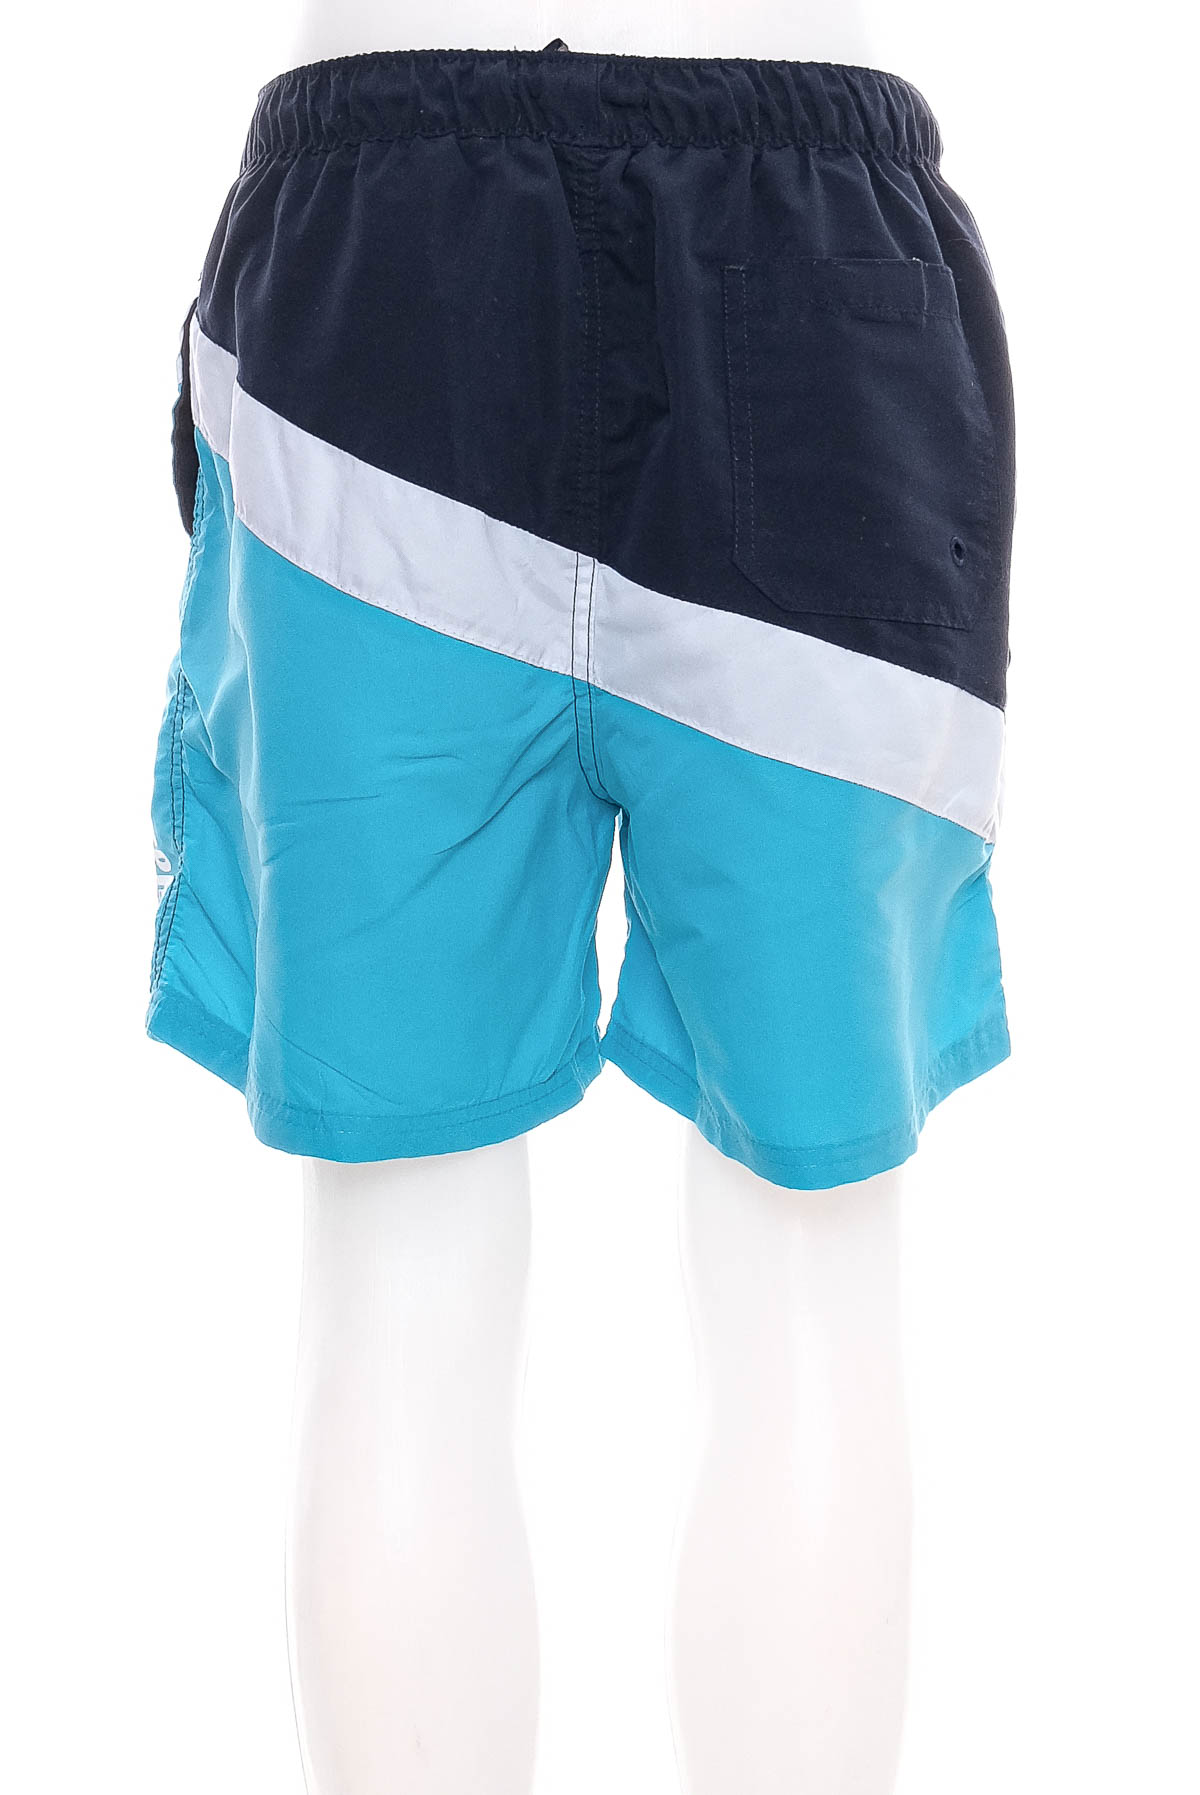 Men's shorts - Jean Pascale - 1